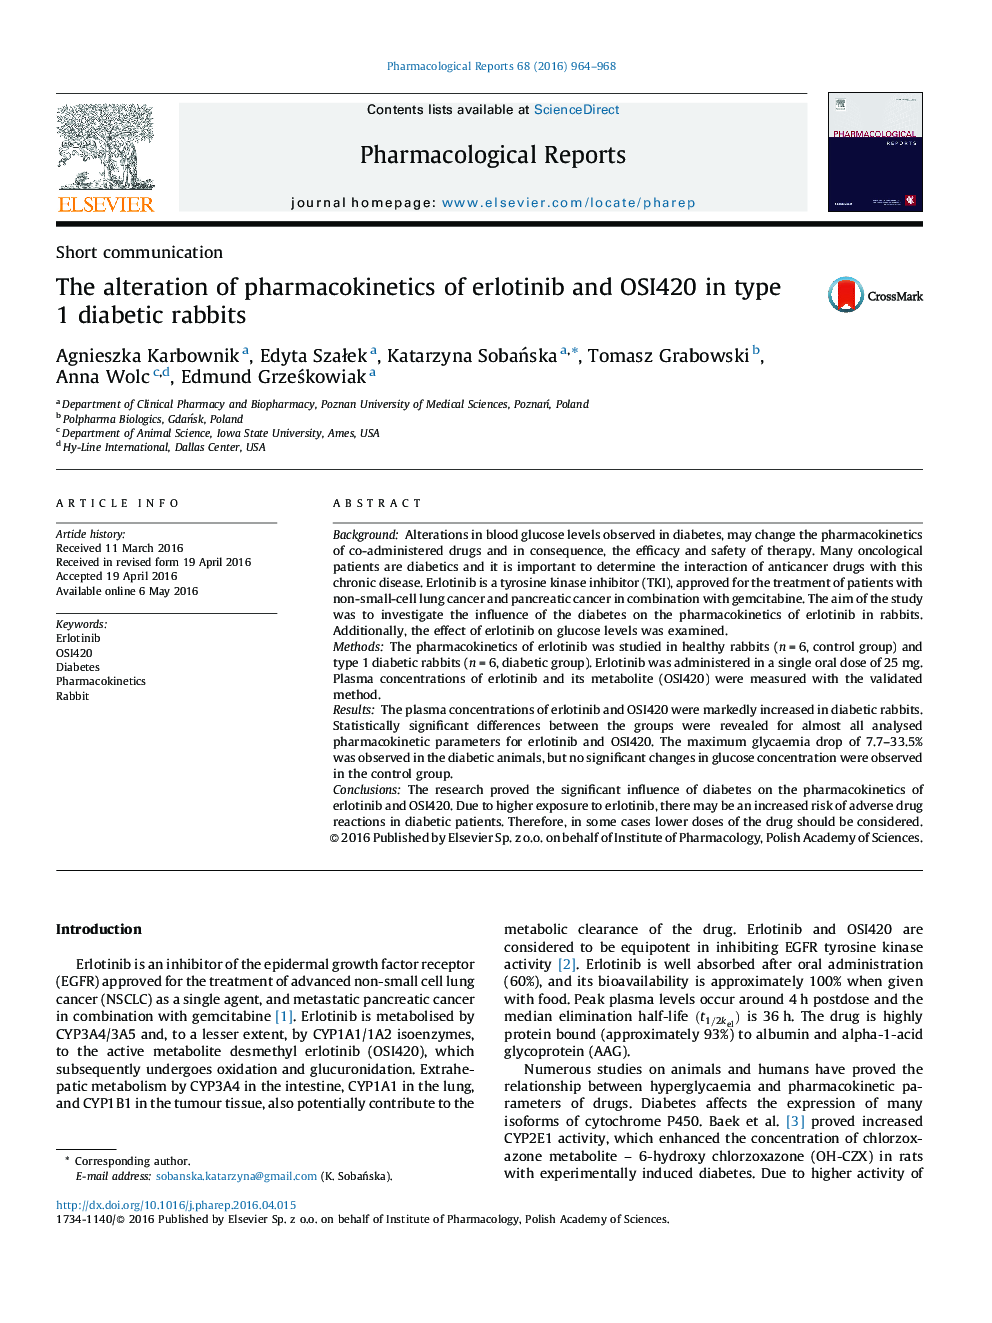 دگرگونی فارماکوکینتیک erlotinib و OSI420 در خرگوش های دیابتی نوع 1 